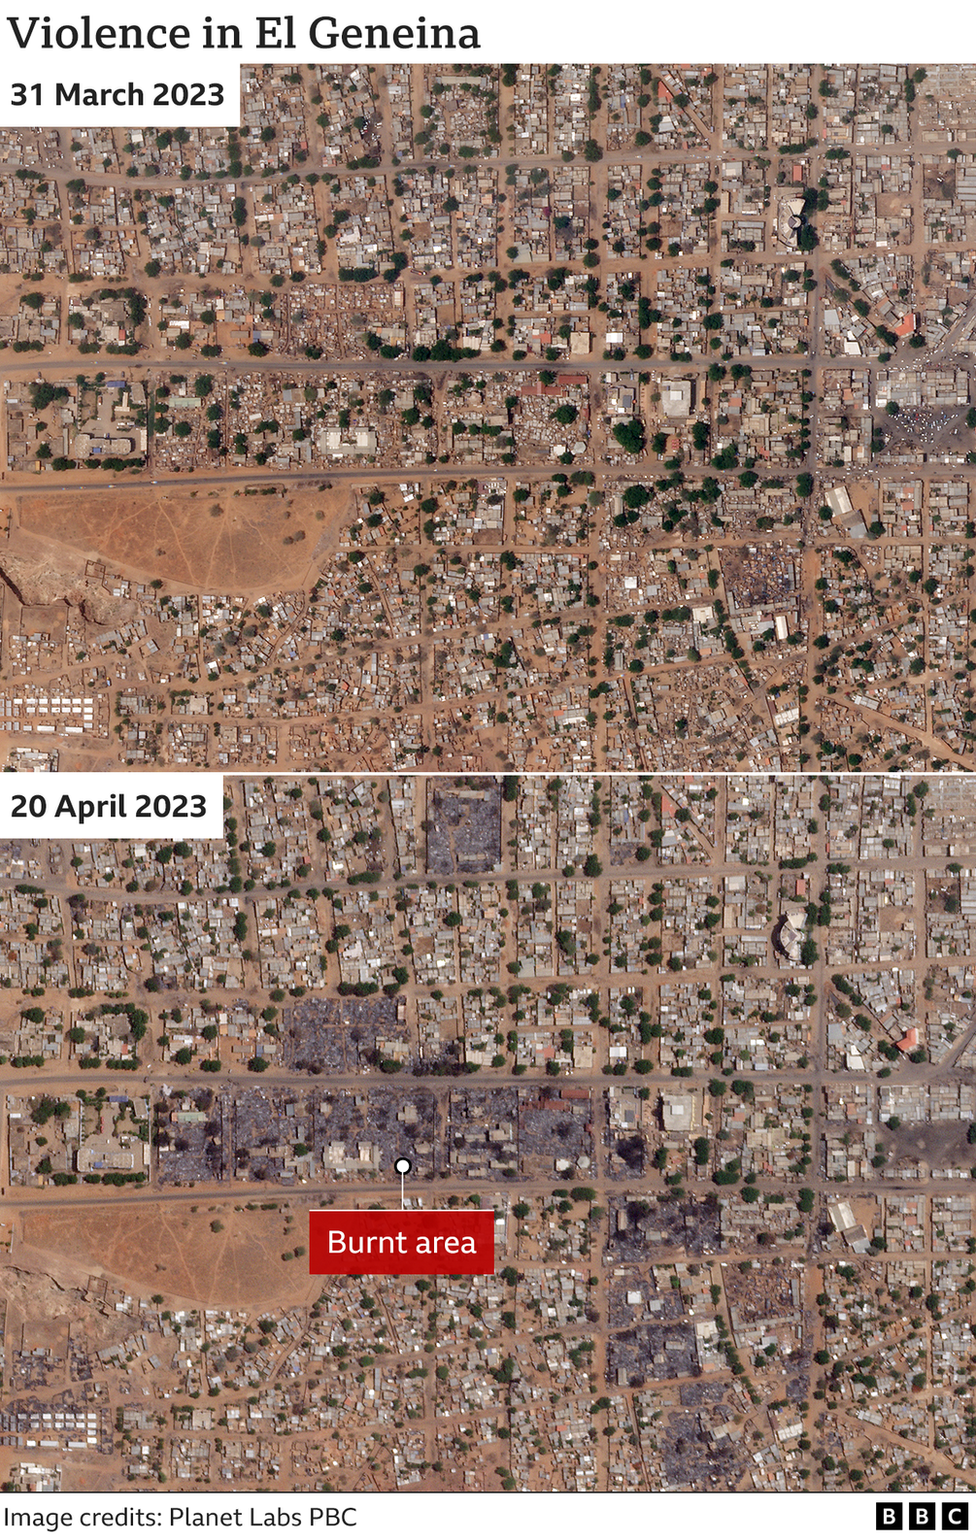 Спутниковые снимки показывают районы, подвергшиеся небольшому насилию в Эль-Генейне в Дарфуре